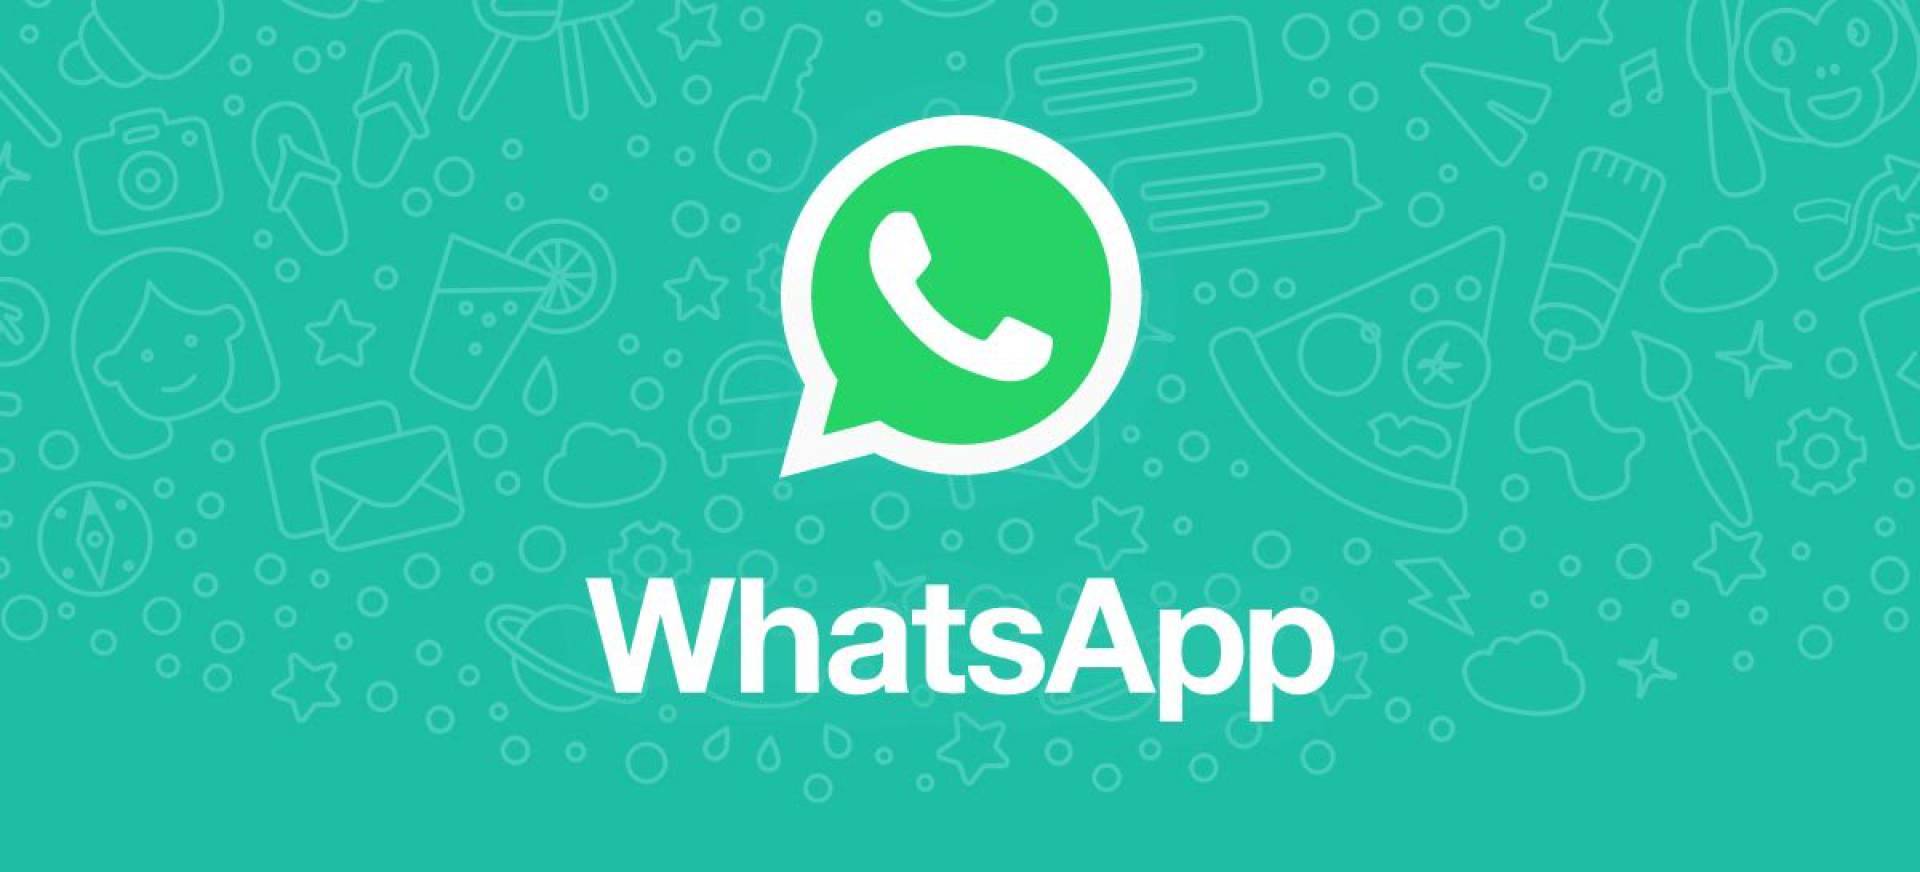 França lança número de WhatsApp para incentivar o francês em todo o mundo
